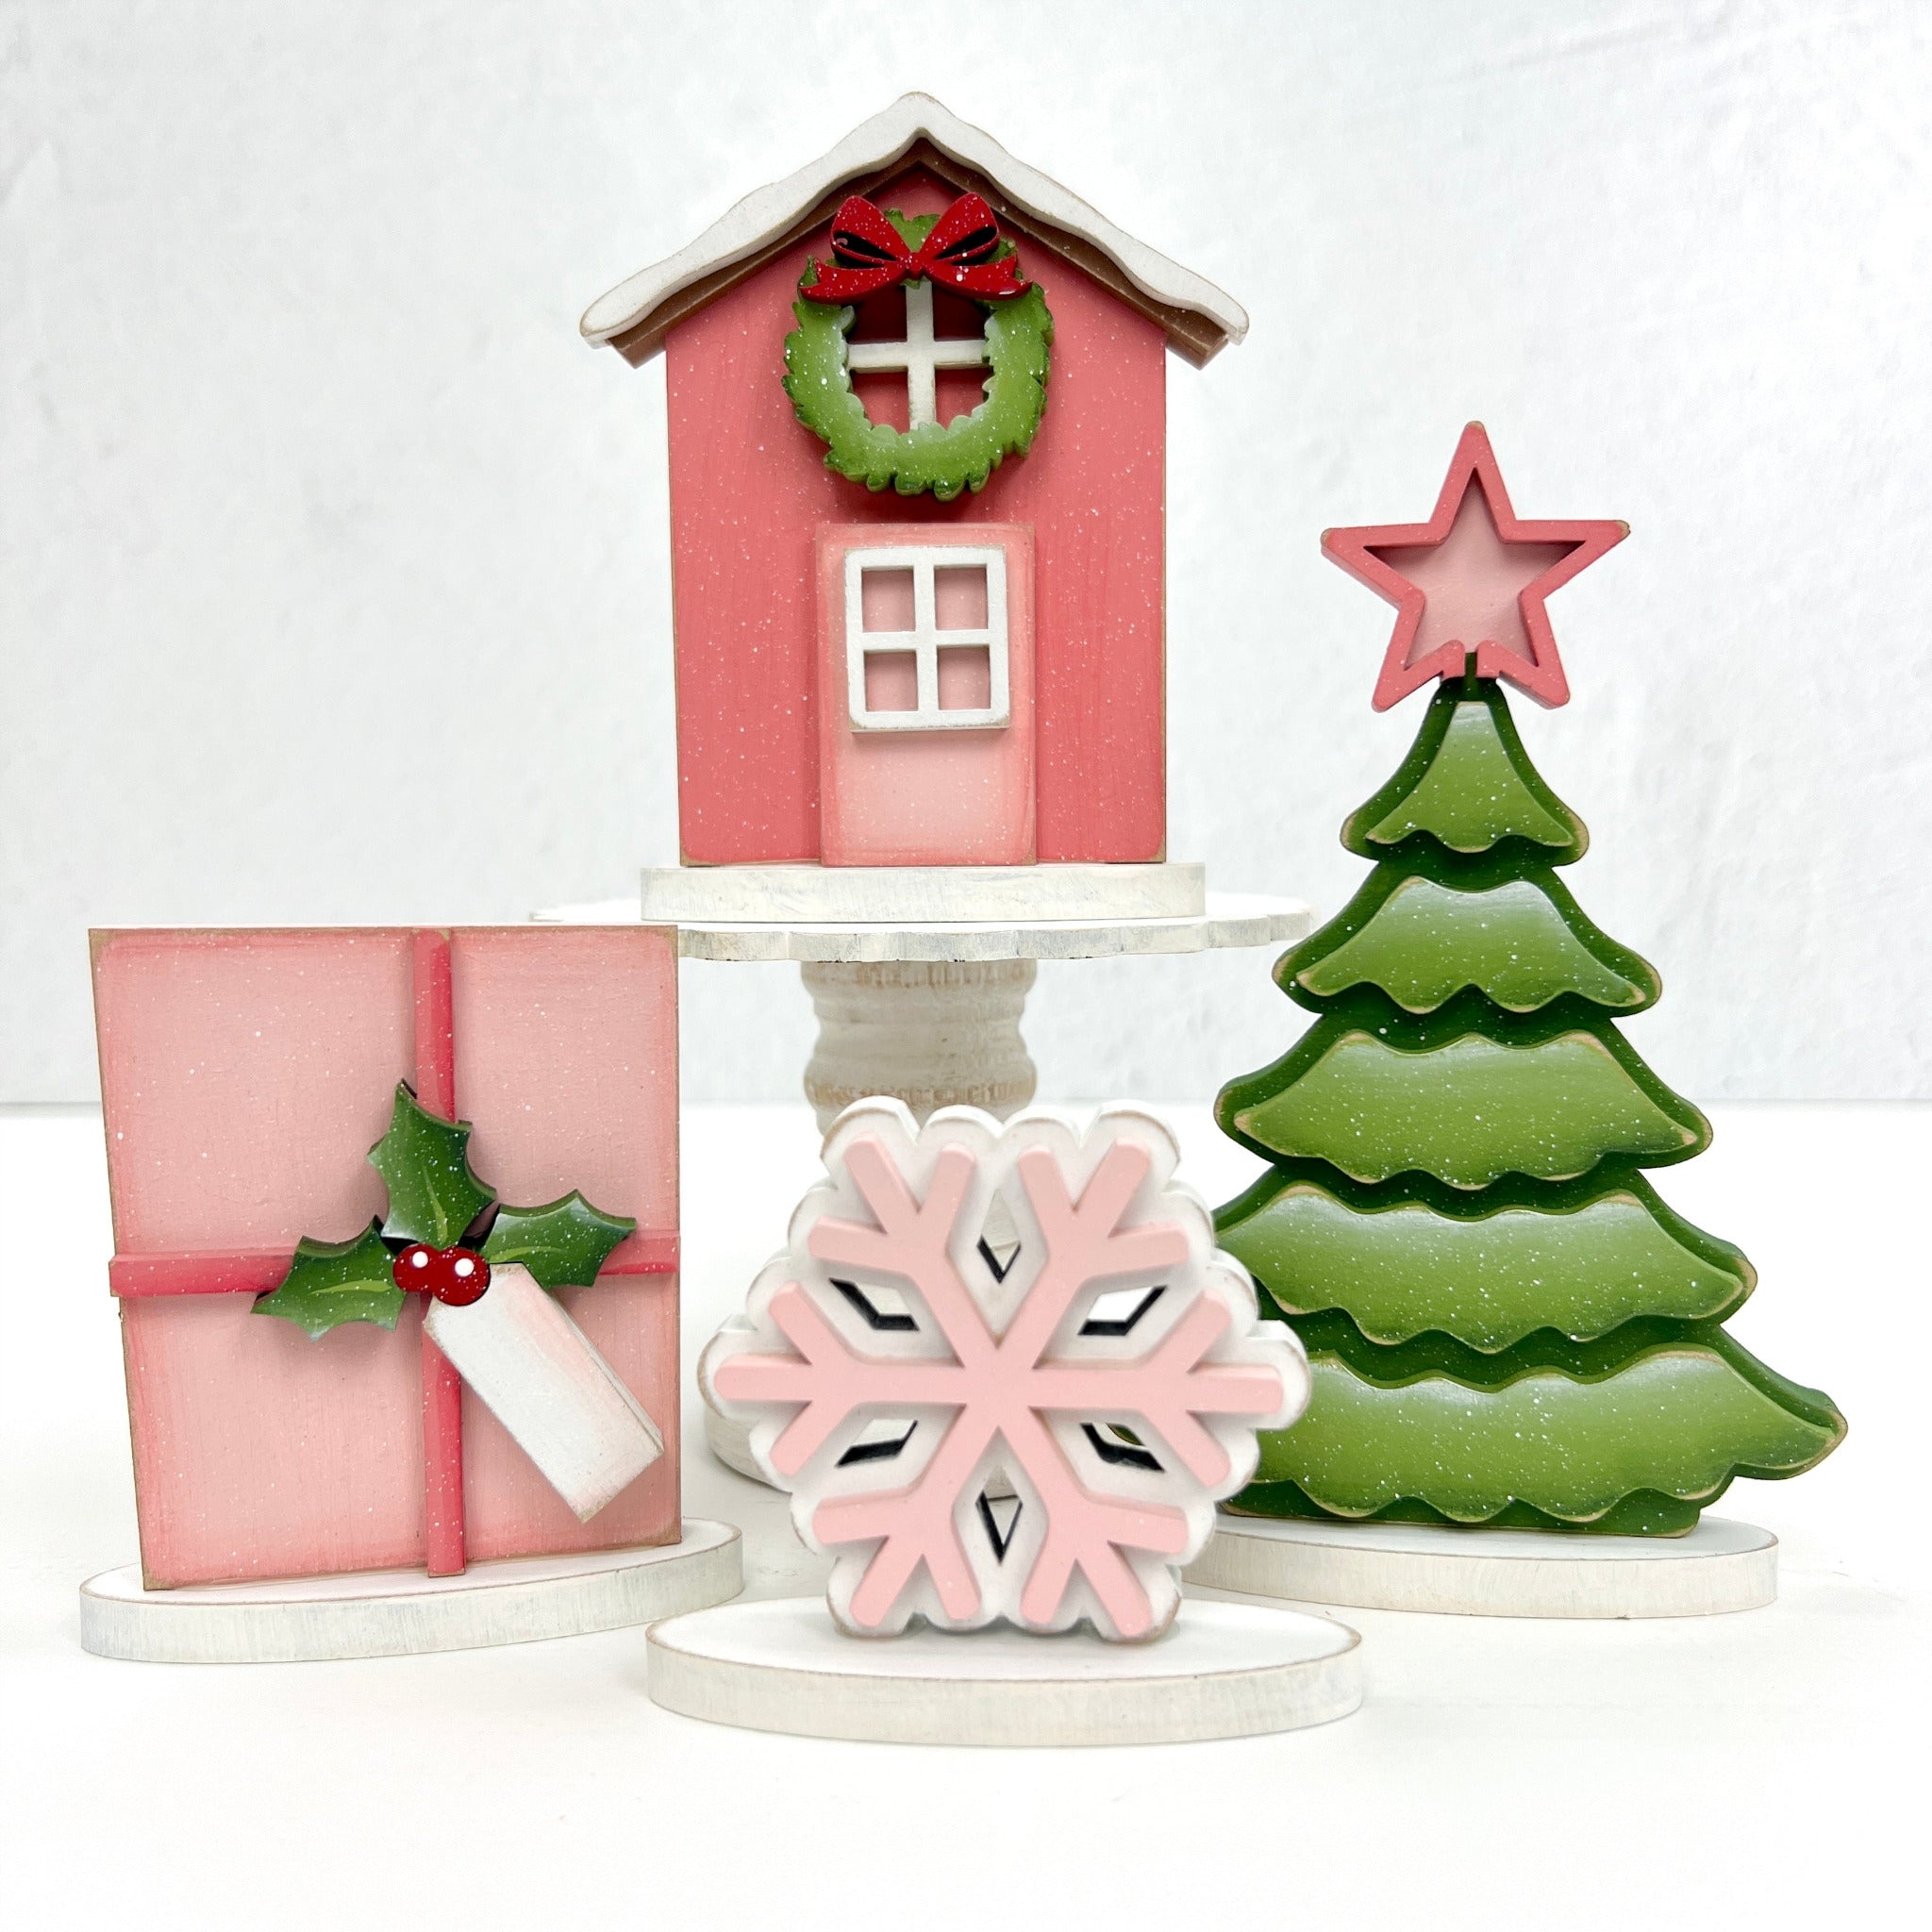 SMALL Happy Santa Ornament, Wood Craft Shapes, Christmas Wood Cutouts, Holiday Decor